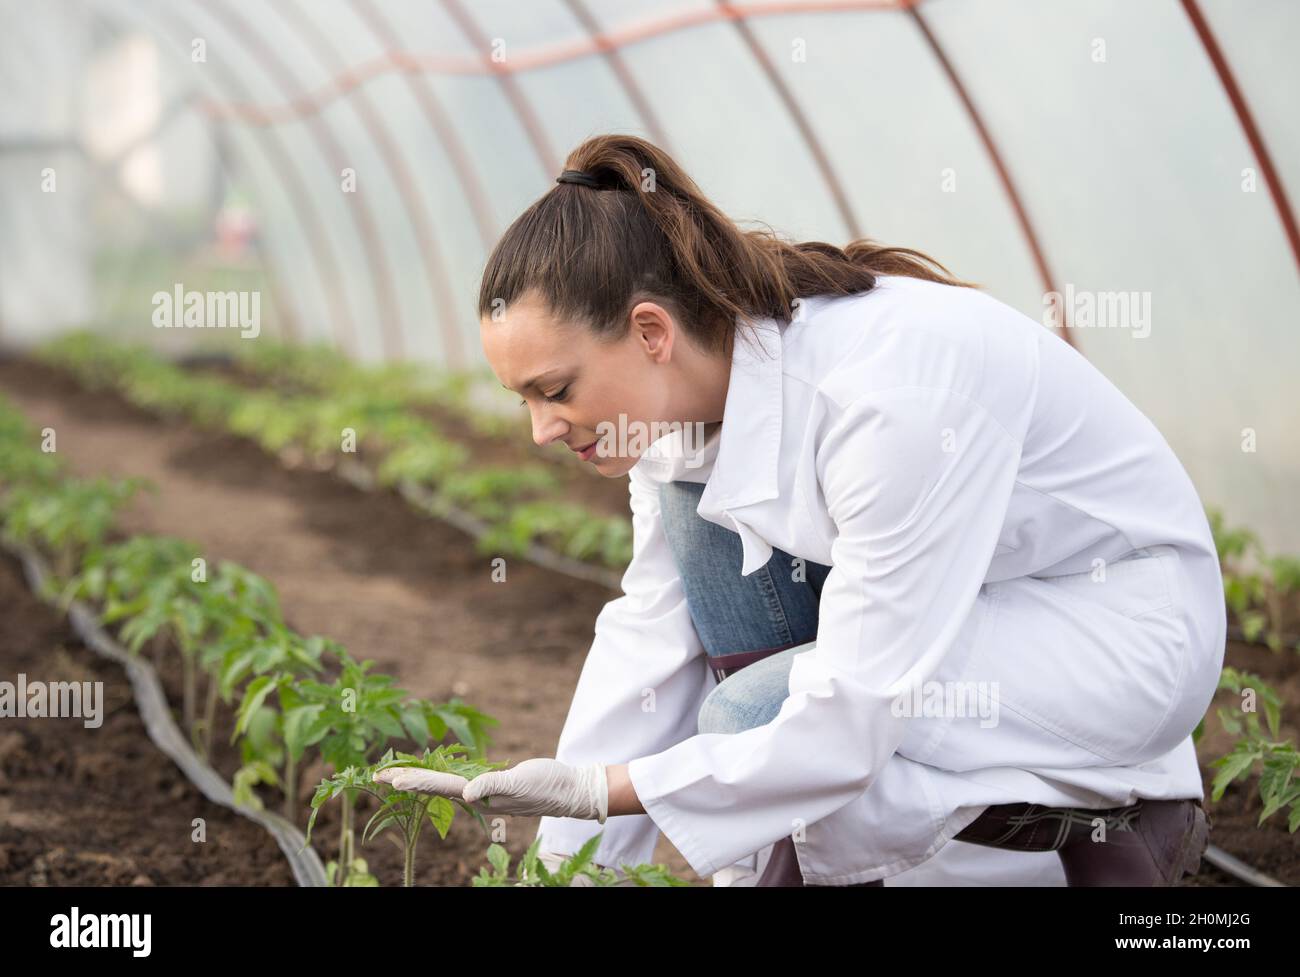 Giovane donna graziosa agronomo in cappotto bianco che supervisiona giovani pianta in serra. Concetto di cura e protezione delle piante Foto Stock